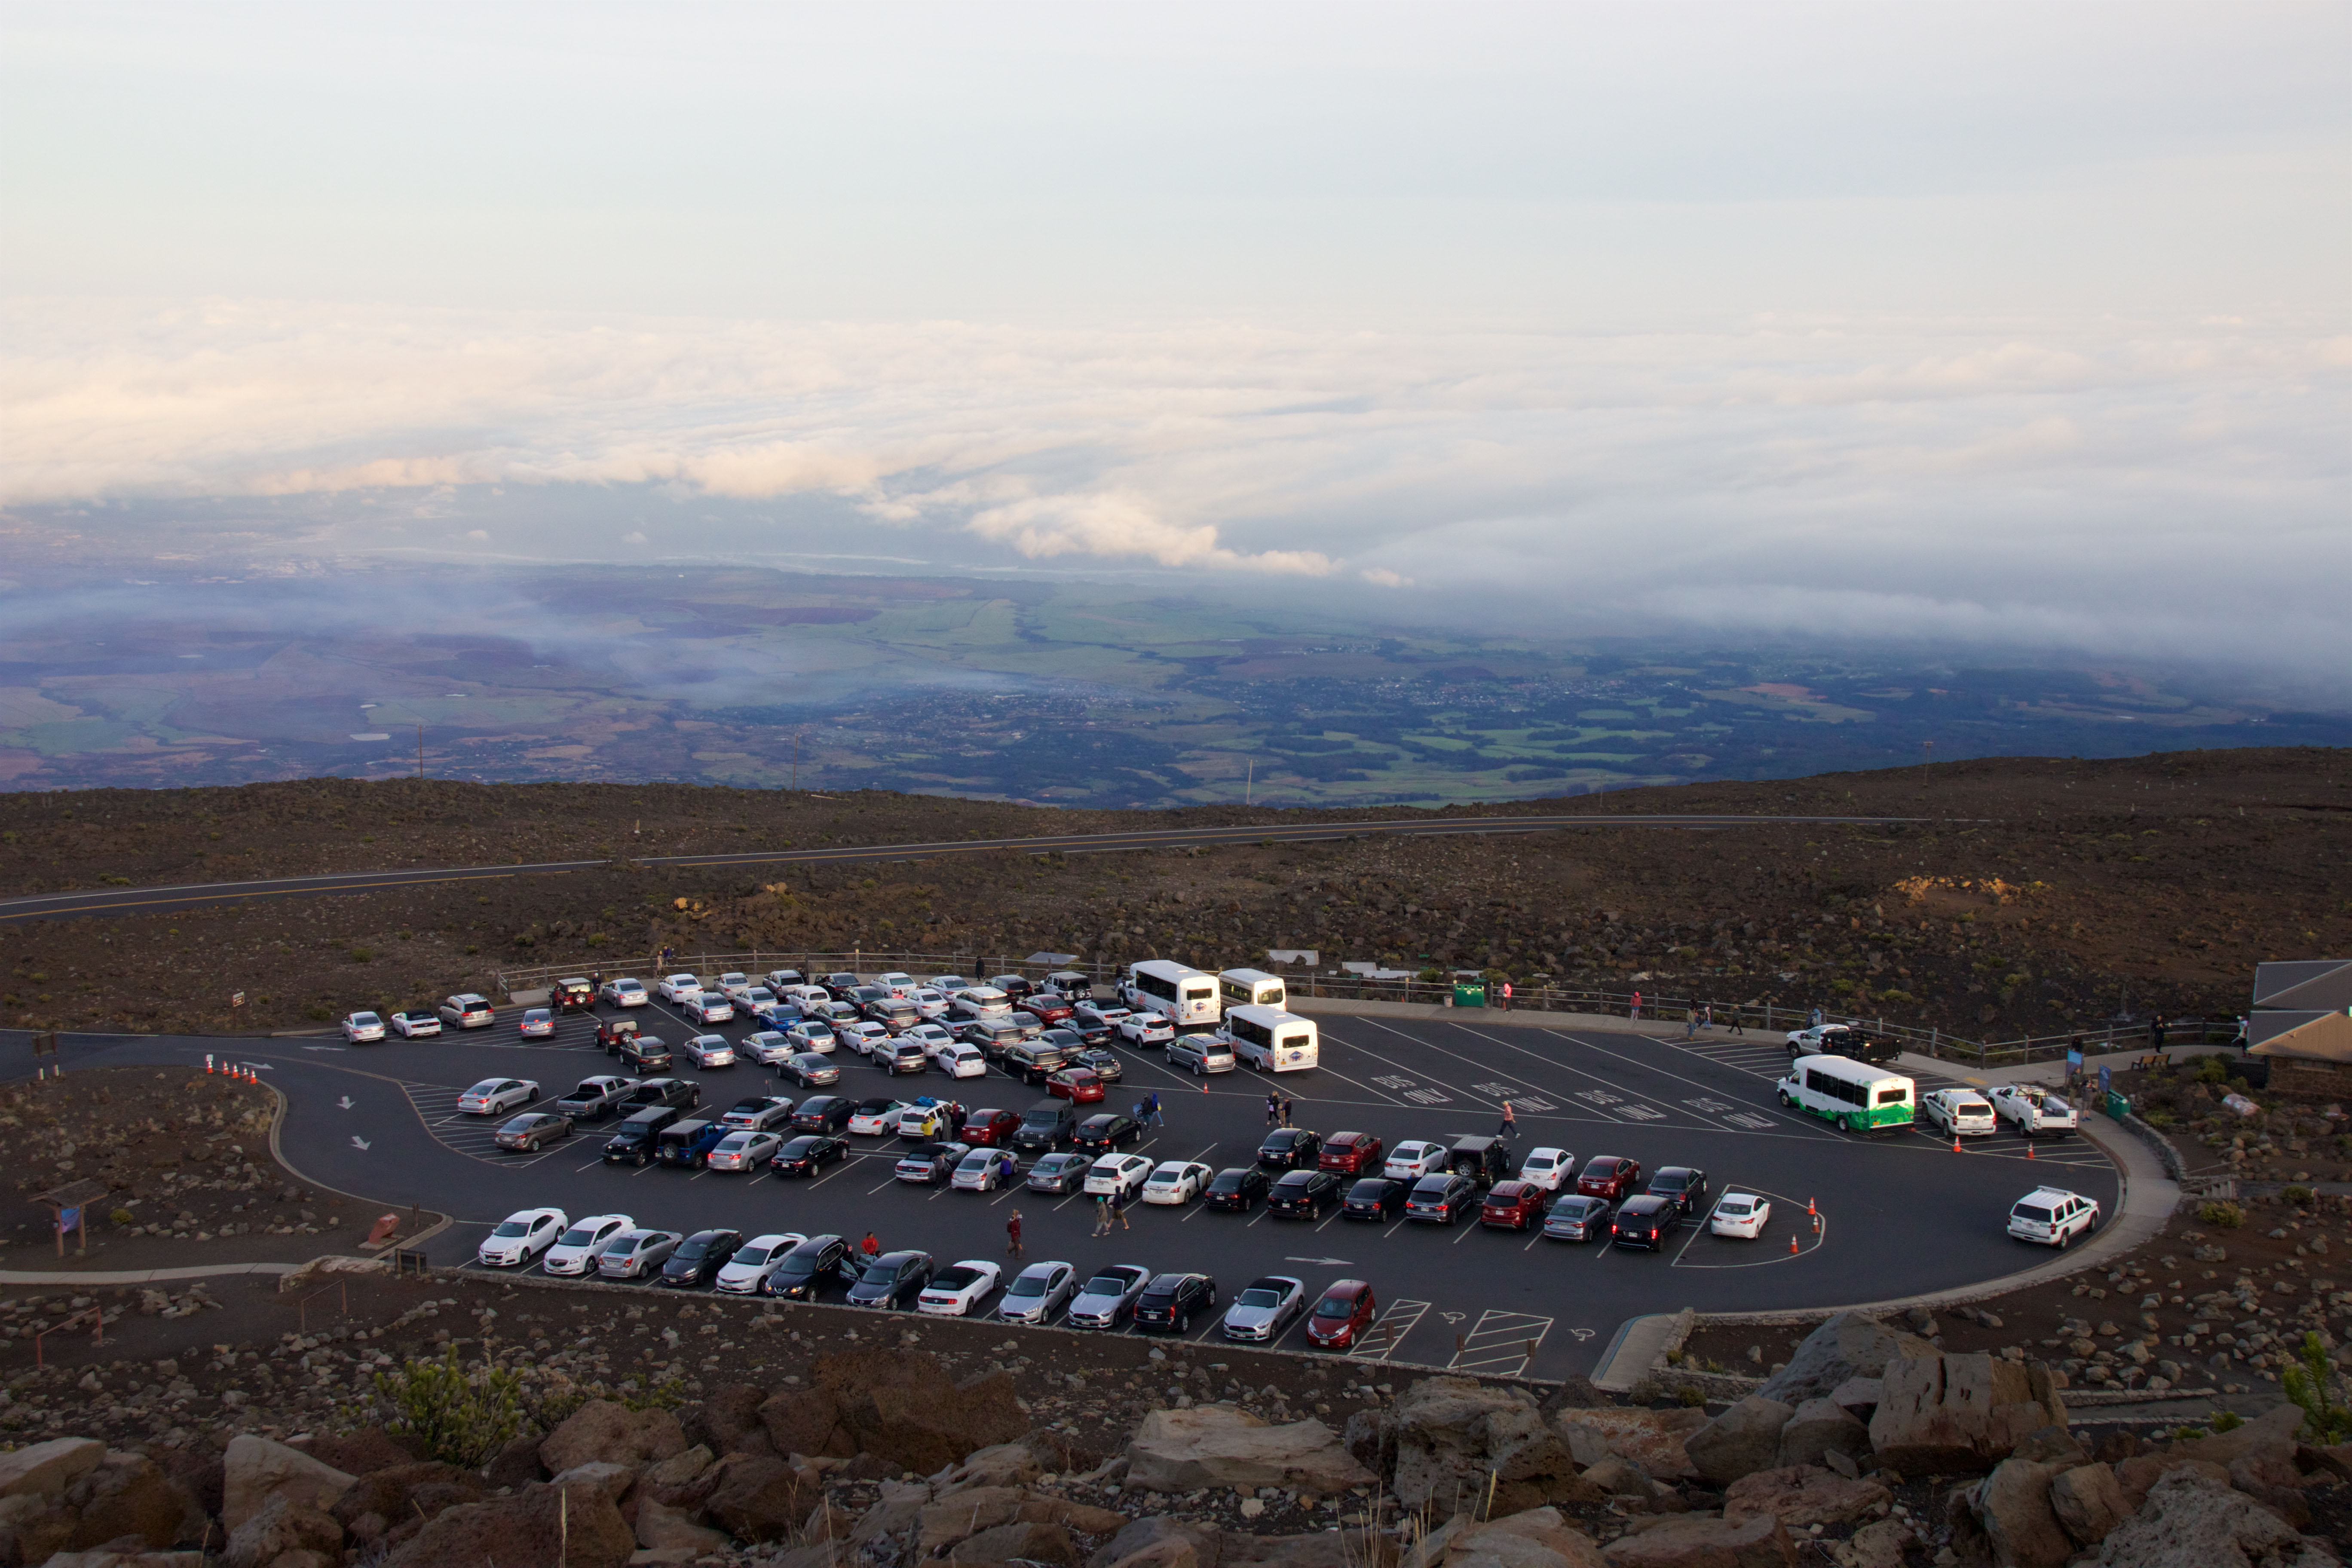 Parking Lot at Haleakala Crater after Sunrise